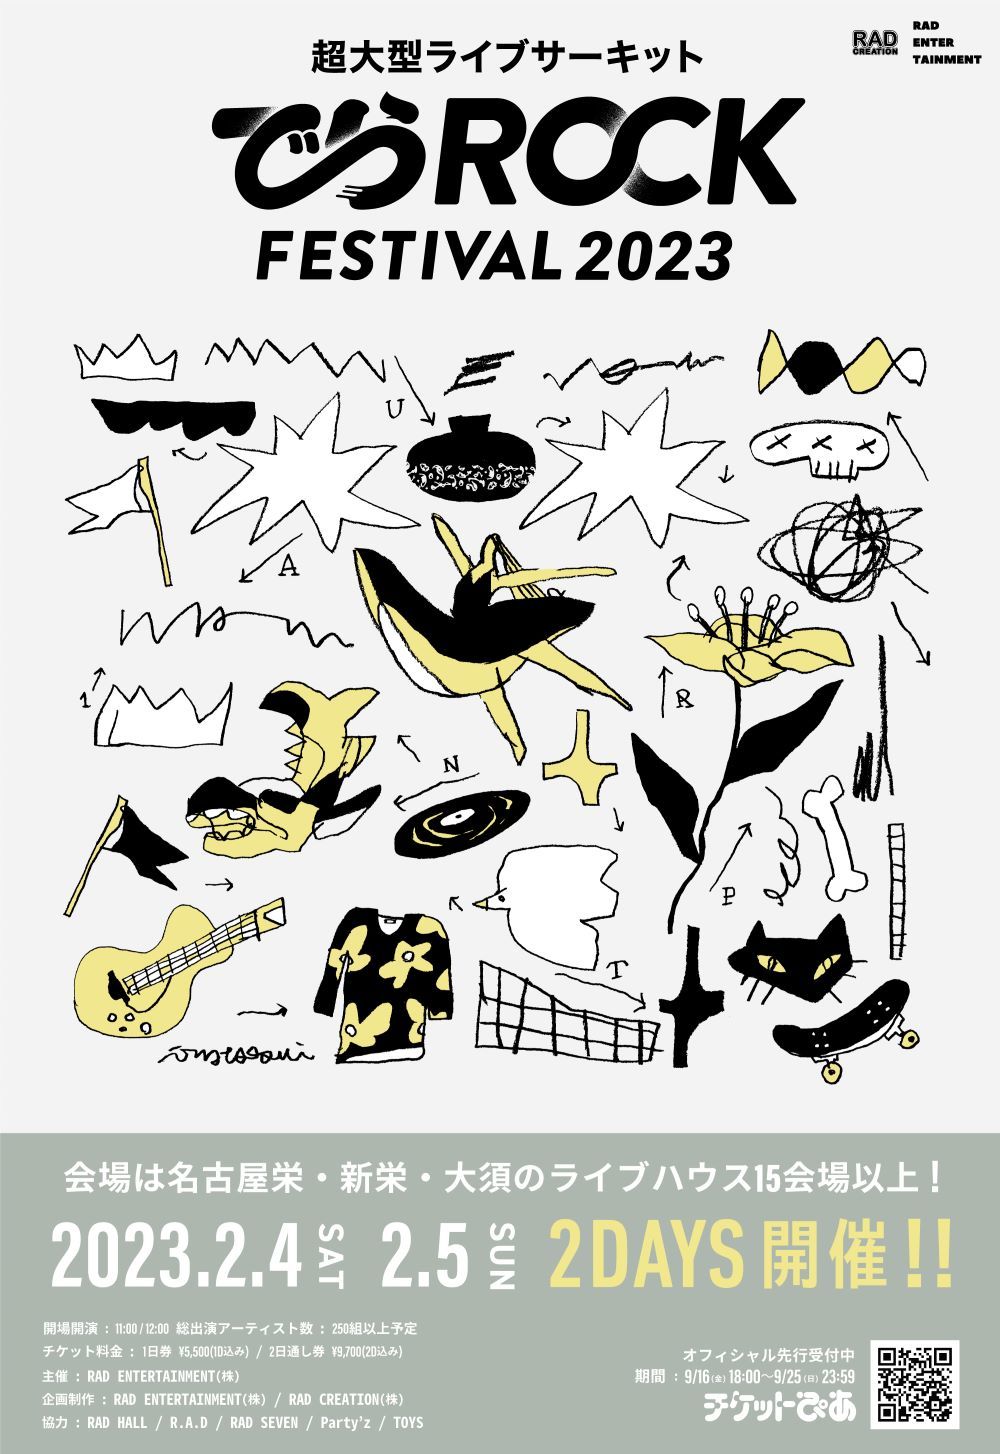 『RAD CREATION & RAD ENTERTAINMENT presents “でらロックフェスティバル 2023”』